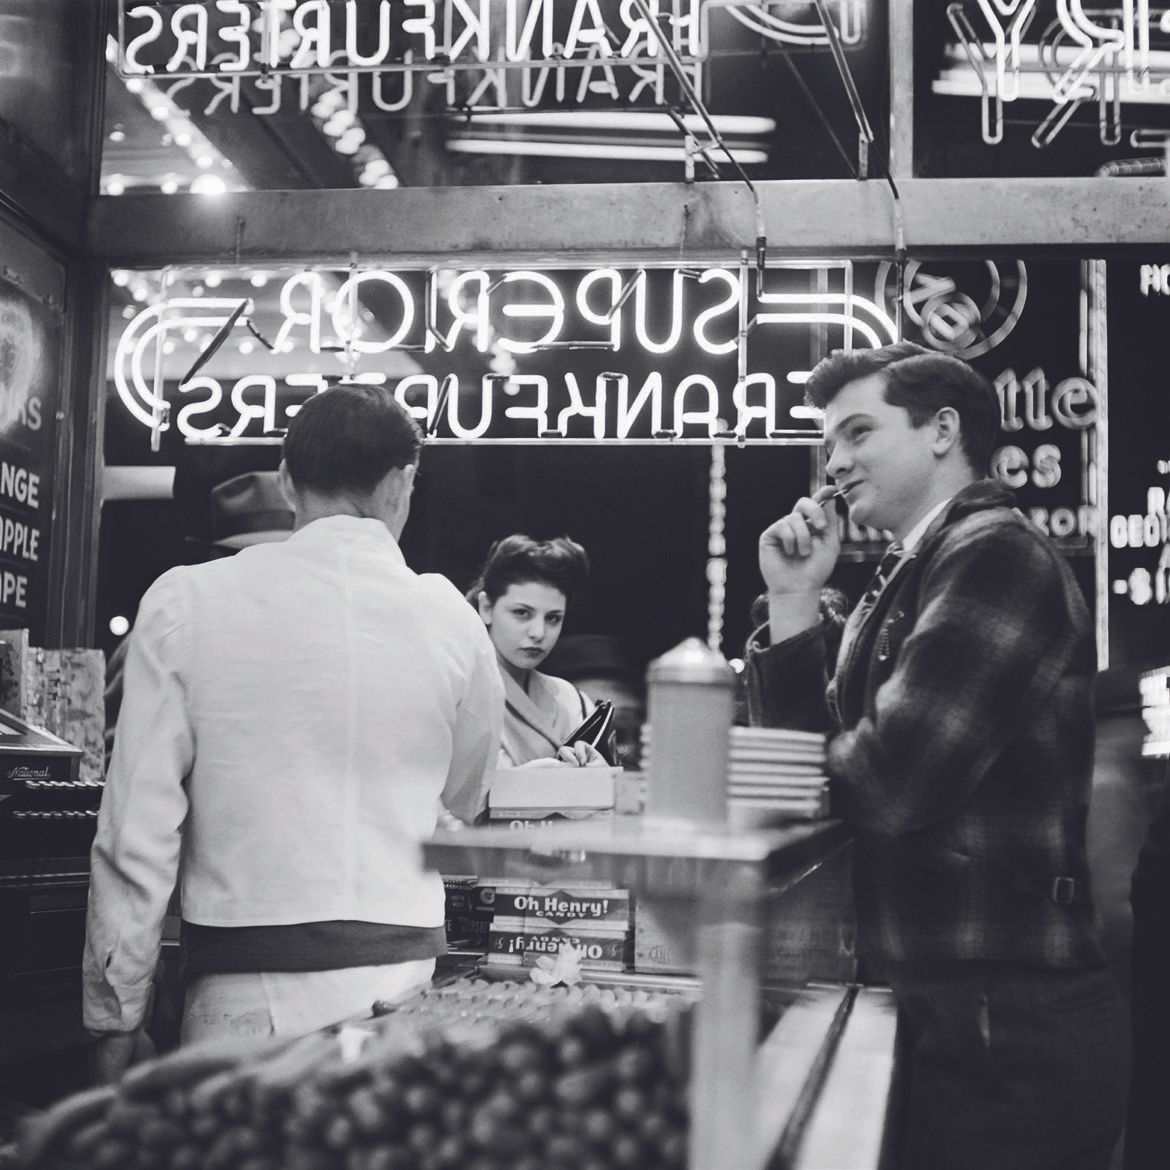 AFP - Eric SCHWAB AFP - Eric SCHWAB

In un milk bar a Broadway, marzo 1947,

nel&hellip;